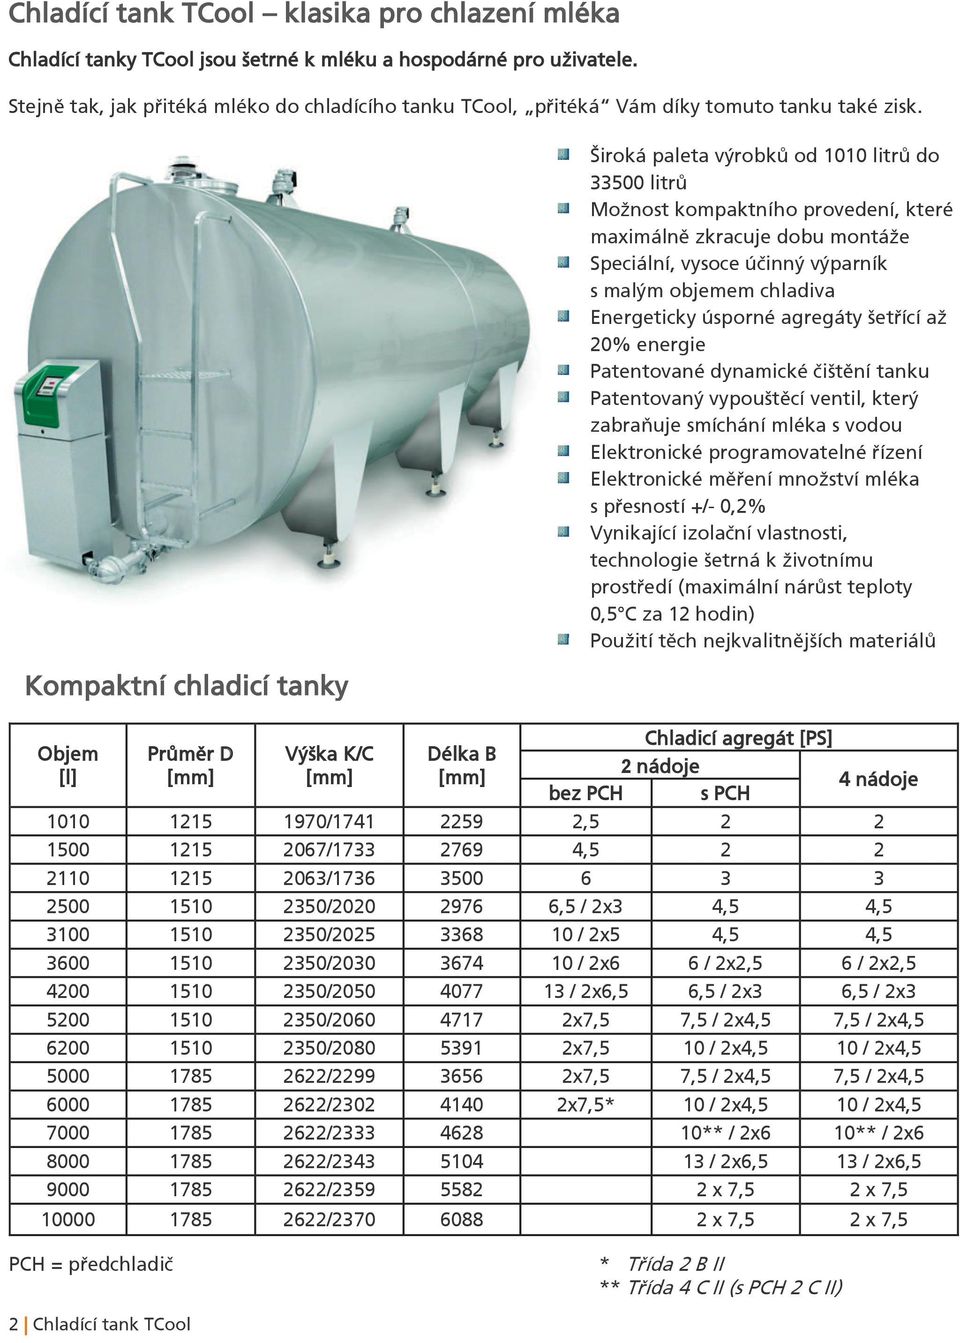 Kompaktní chladicí tanky Objem [l] Průměr D Výška K/C Délka B Široká paleta výrobků od 1010 litrů do 33500 litrů Možnost kompaktního provedení, které maximálně zkracuje dobu montáže Speciální, vysoce